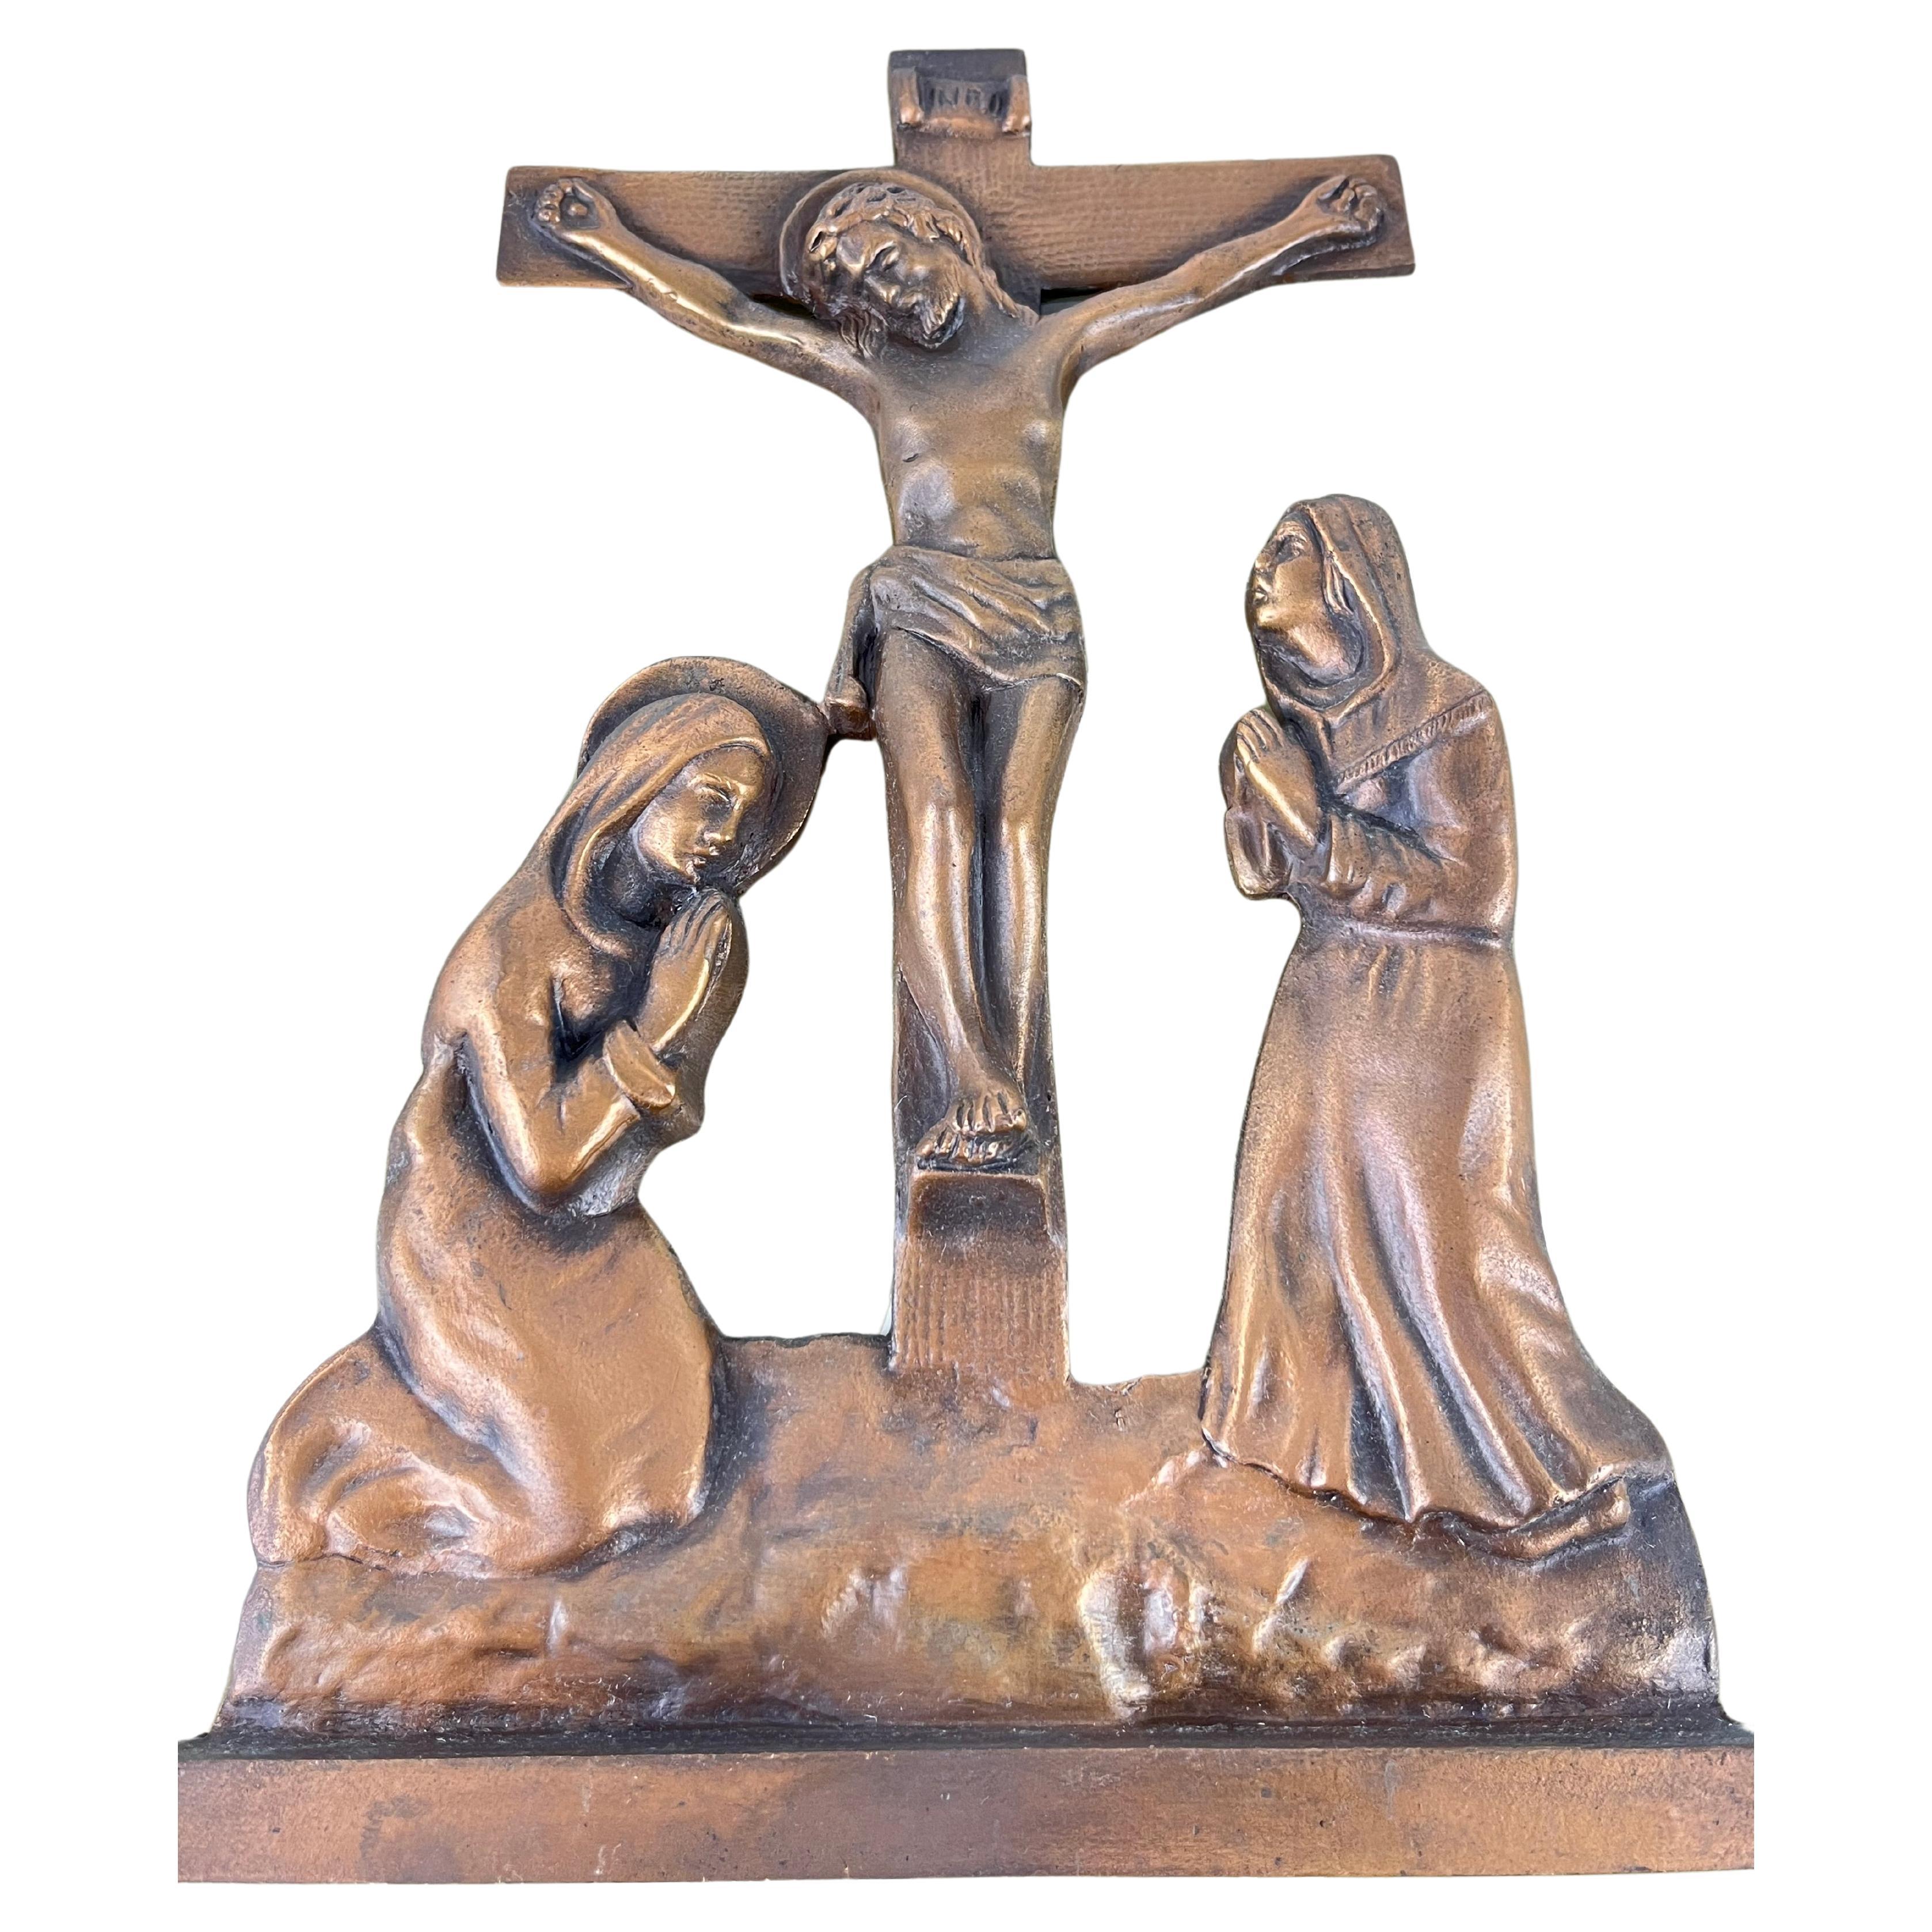 Jesus am Kreuz, Bronze auf Plexiglas, Italien, 1970er Jahre
Gefunden in einer noblen Wohnung, intakt, kleine Alterungsspuren.